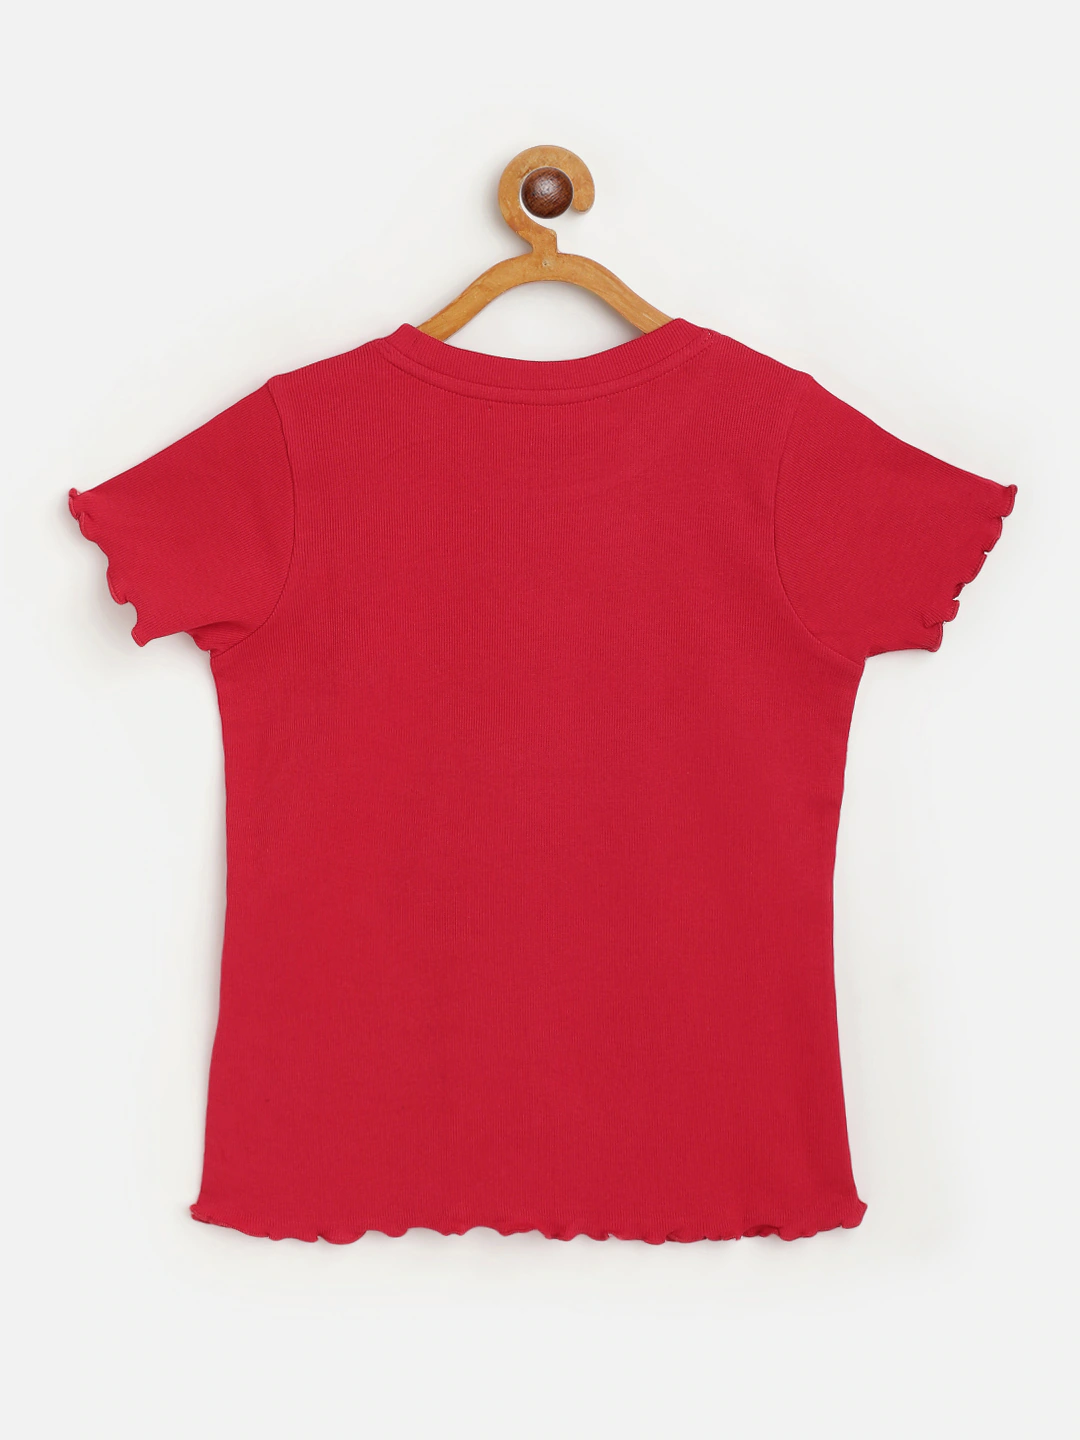 Girl's Red Rib Short Sleeve Top - LYUSH KIDS